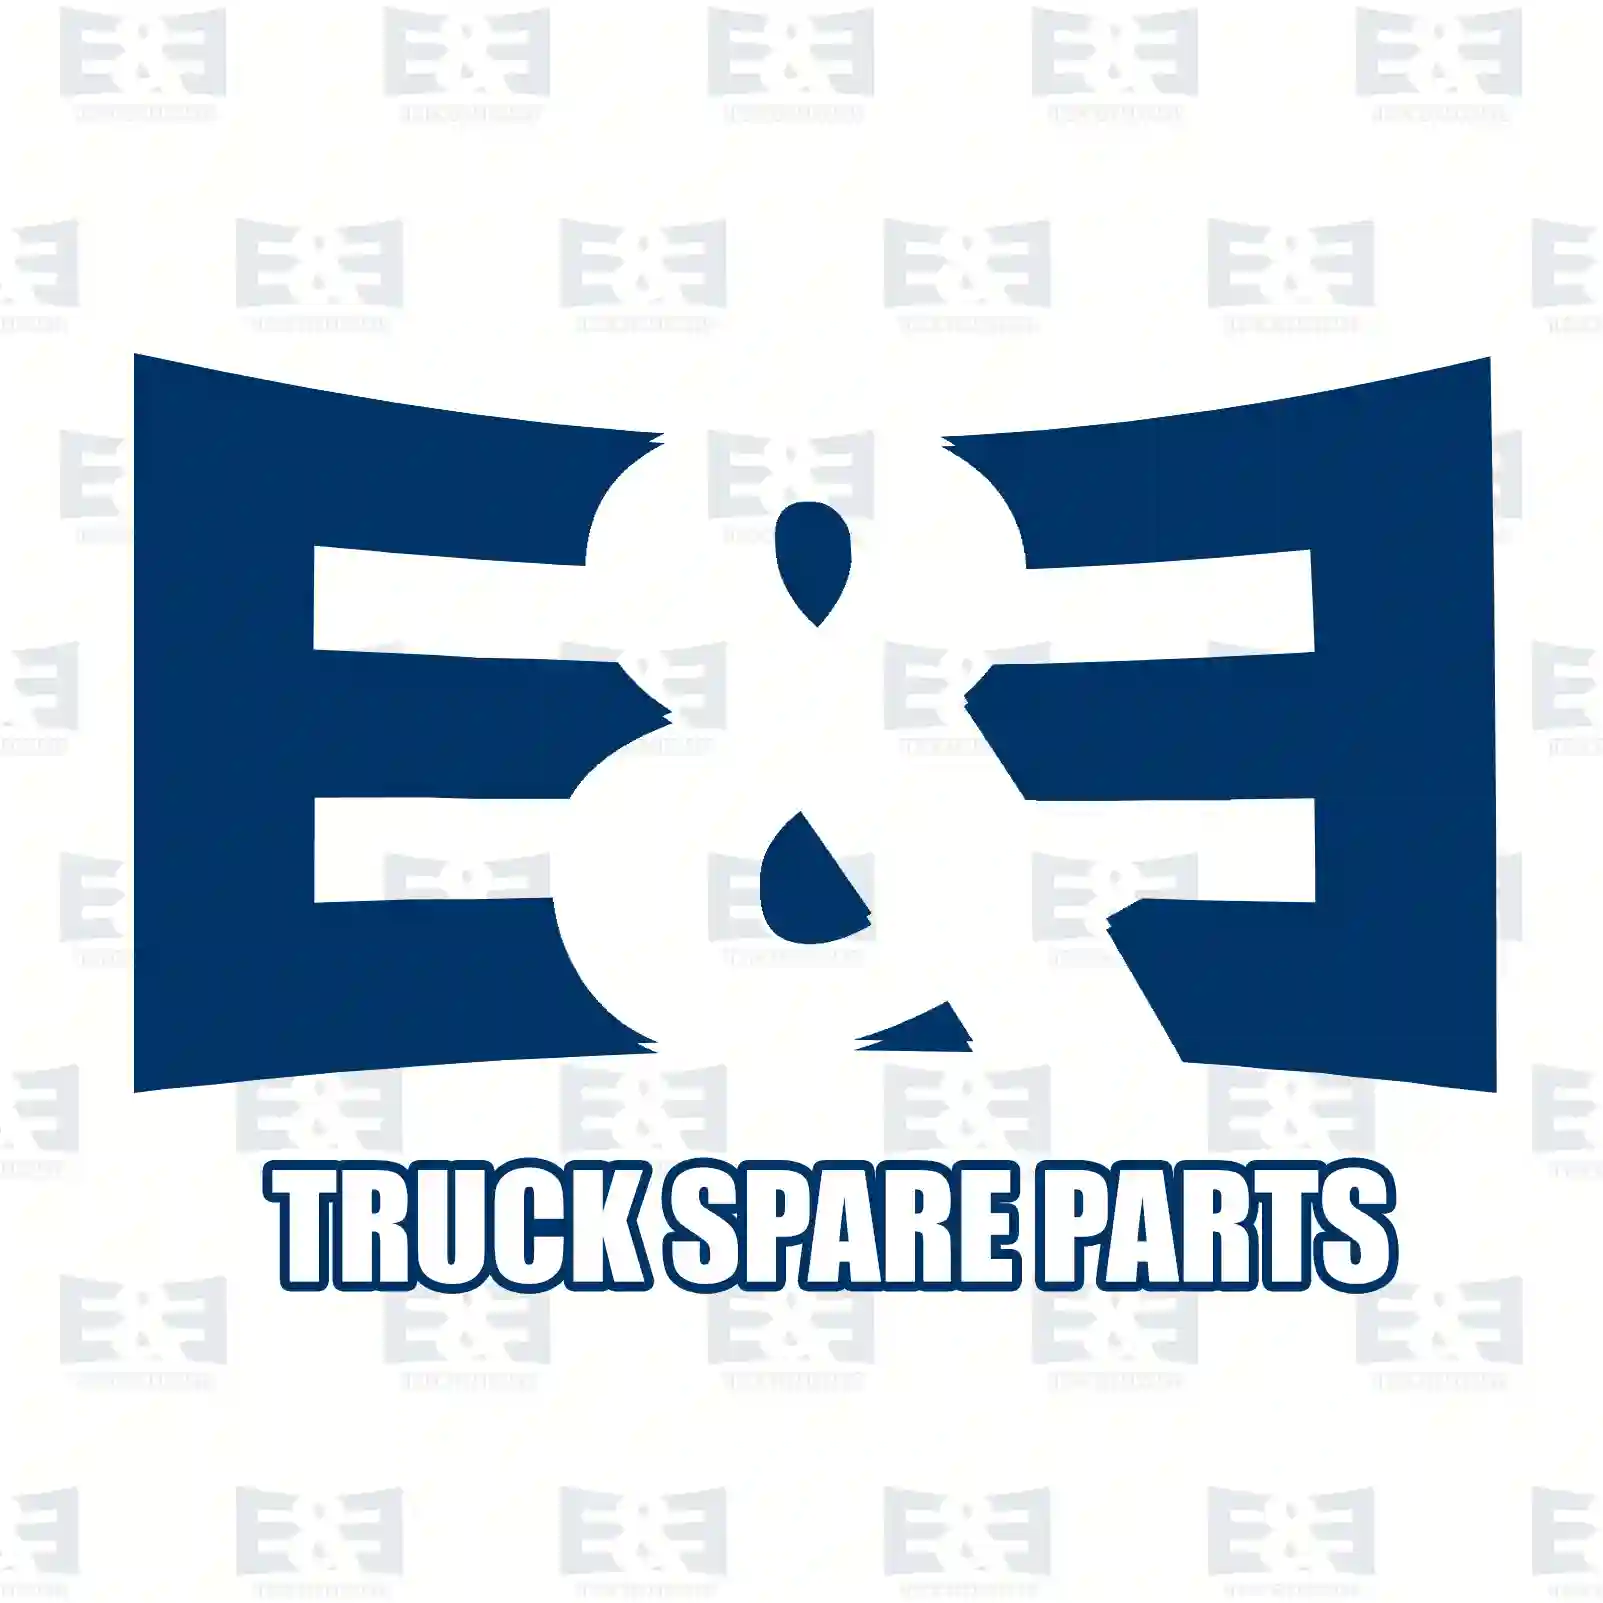 Air tank, 2E2293021, 504197582, 5801545039, , , ||  2E2293021 E&E Truck Spare Parts | Truck Spare Parts, Auotomotive Spare Parts Air tank, 2E2293021, 504197582, 5801545039, , , ||  2E2293021 E&E Truck Spare Parts | Truck Spare Parts, Auotomotive Spare Parts